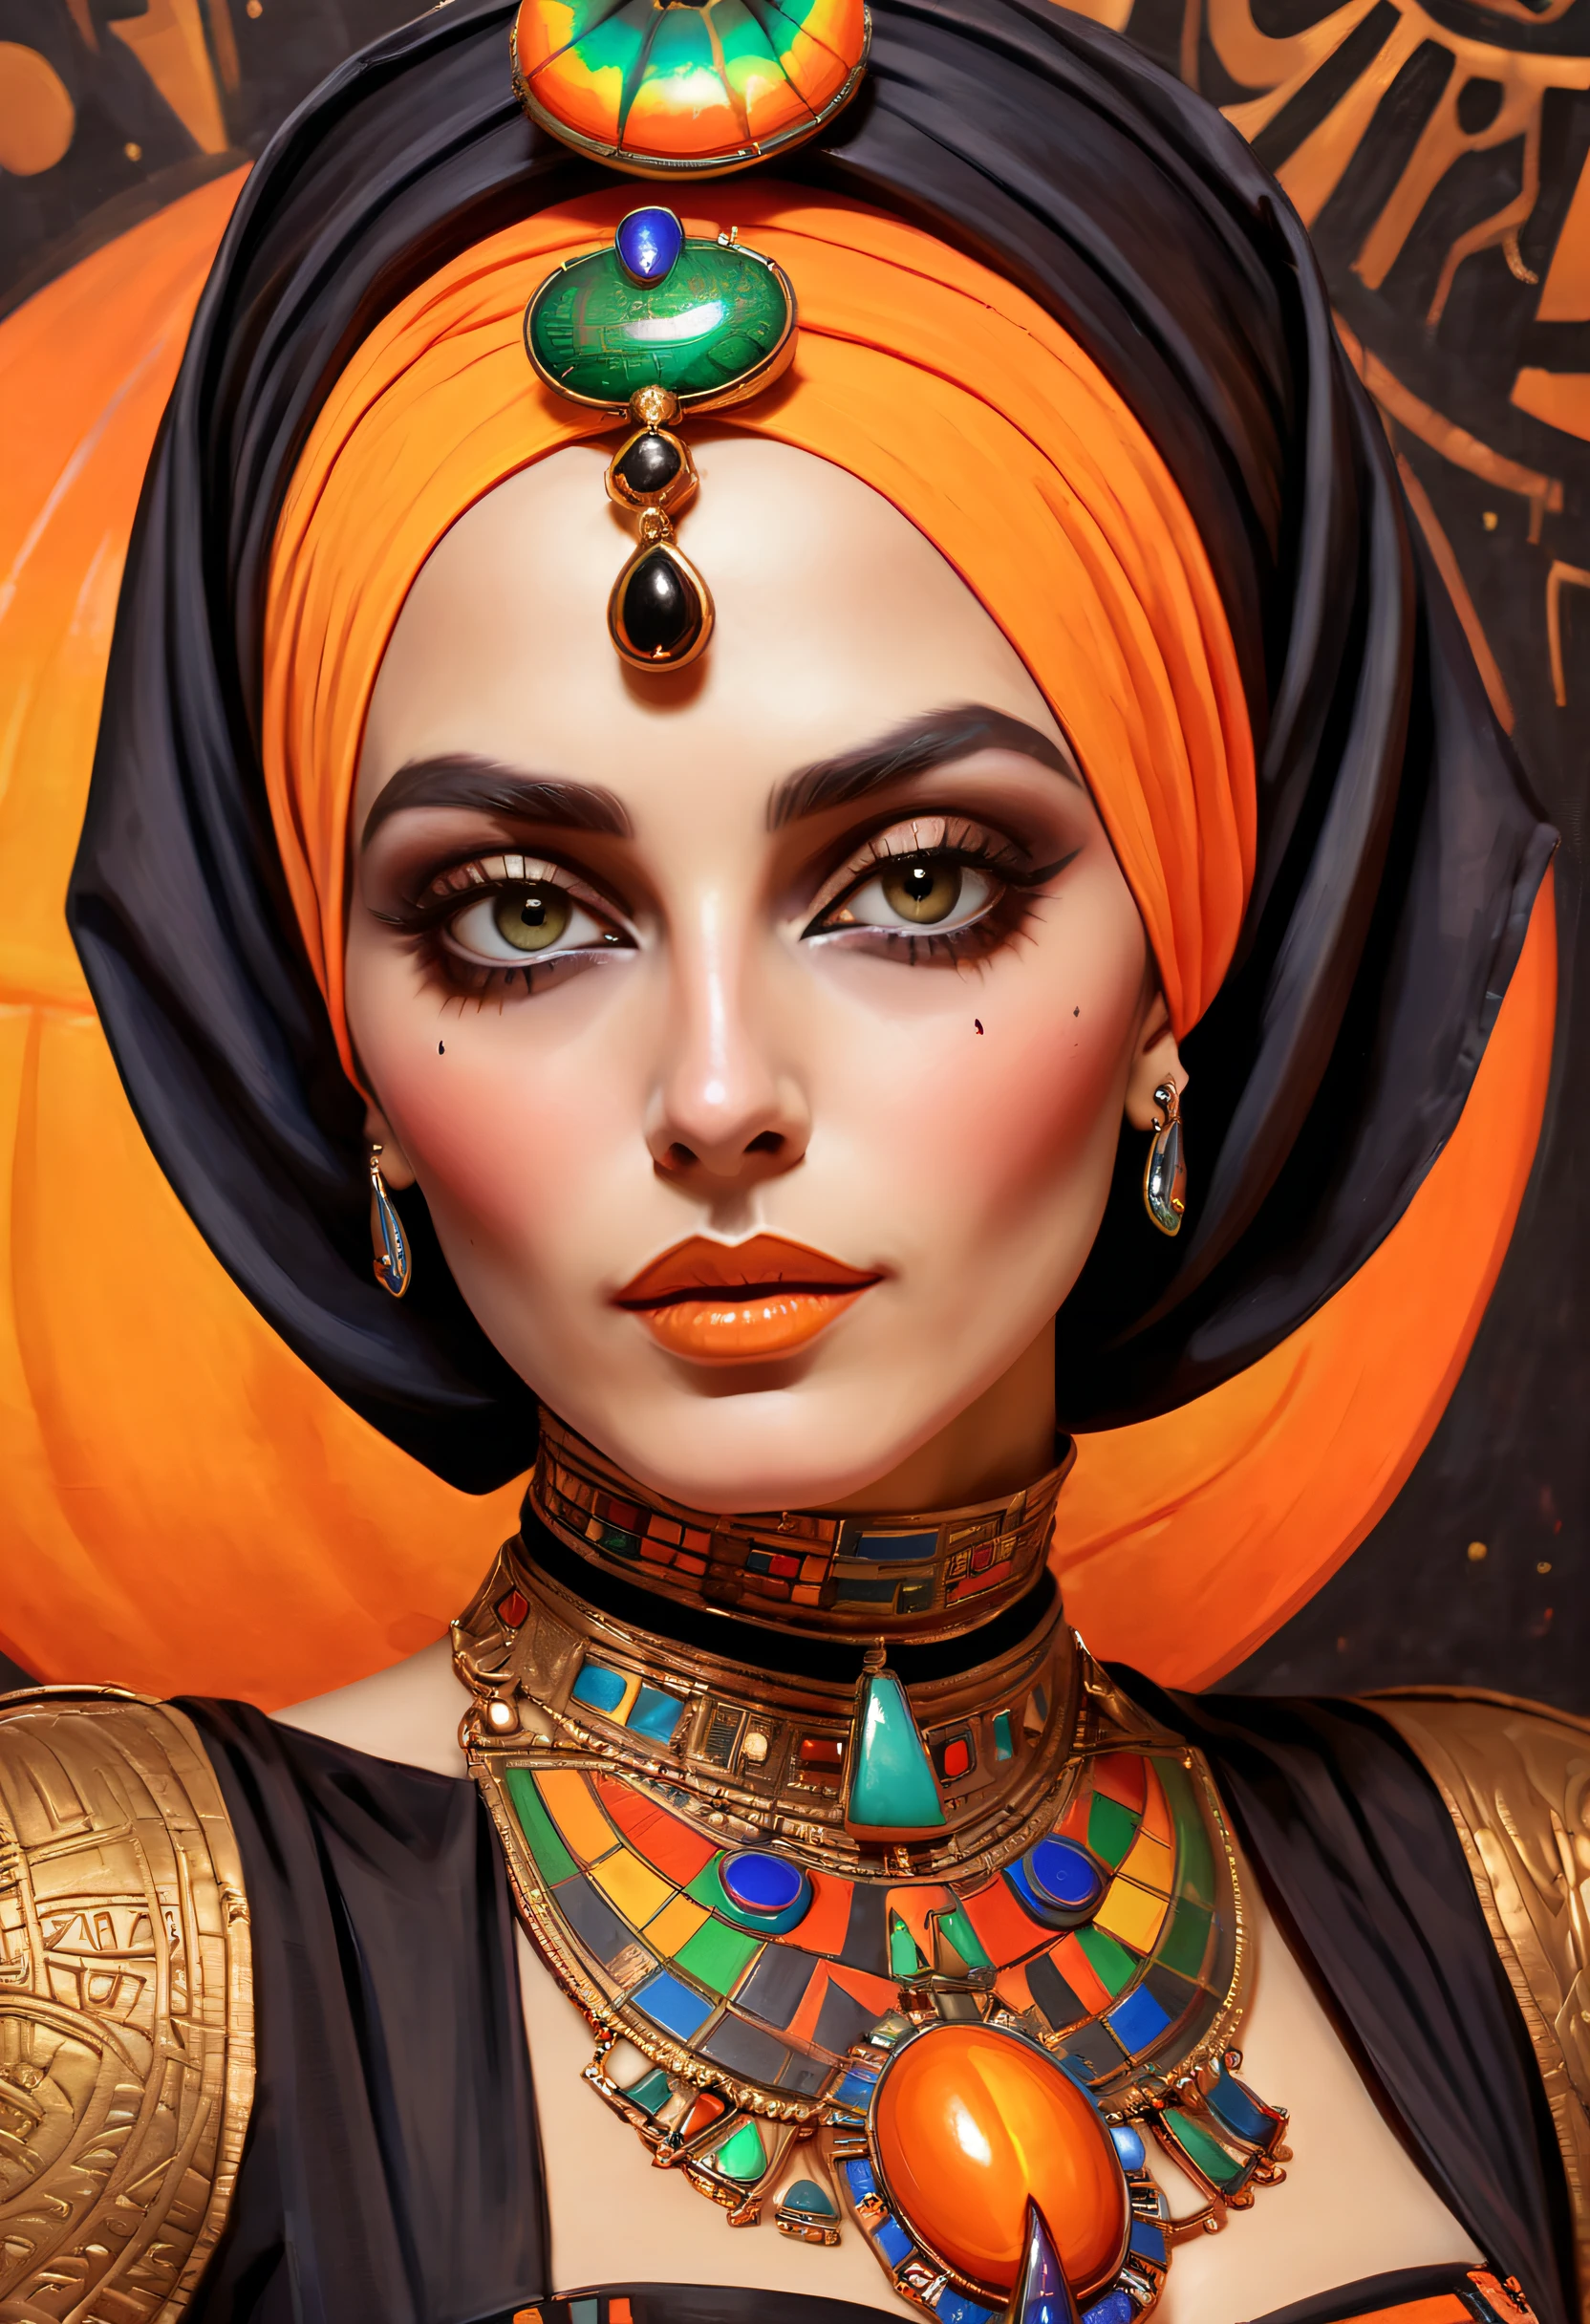 色鮮やかな絵画 (ハロウィーンのママのコスチュームを着た女性:1.3), 極クローズアップ, ハロウィーンをテーマにした美学, 防腐剤入りリネン, ヒジャブふしだらな, エジプトのスカラベのブローチ, 古代エジプト, ニコライ・サモリのスタイル